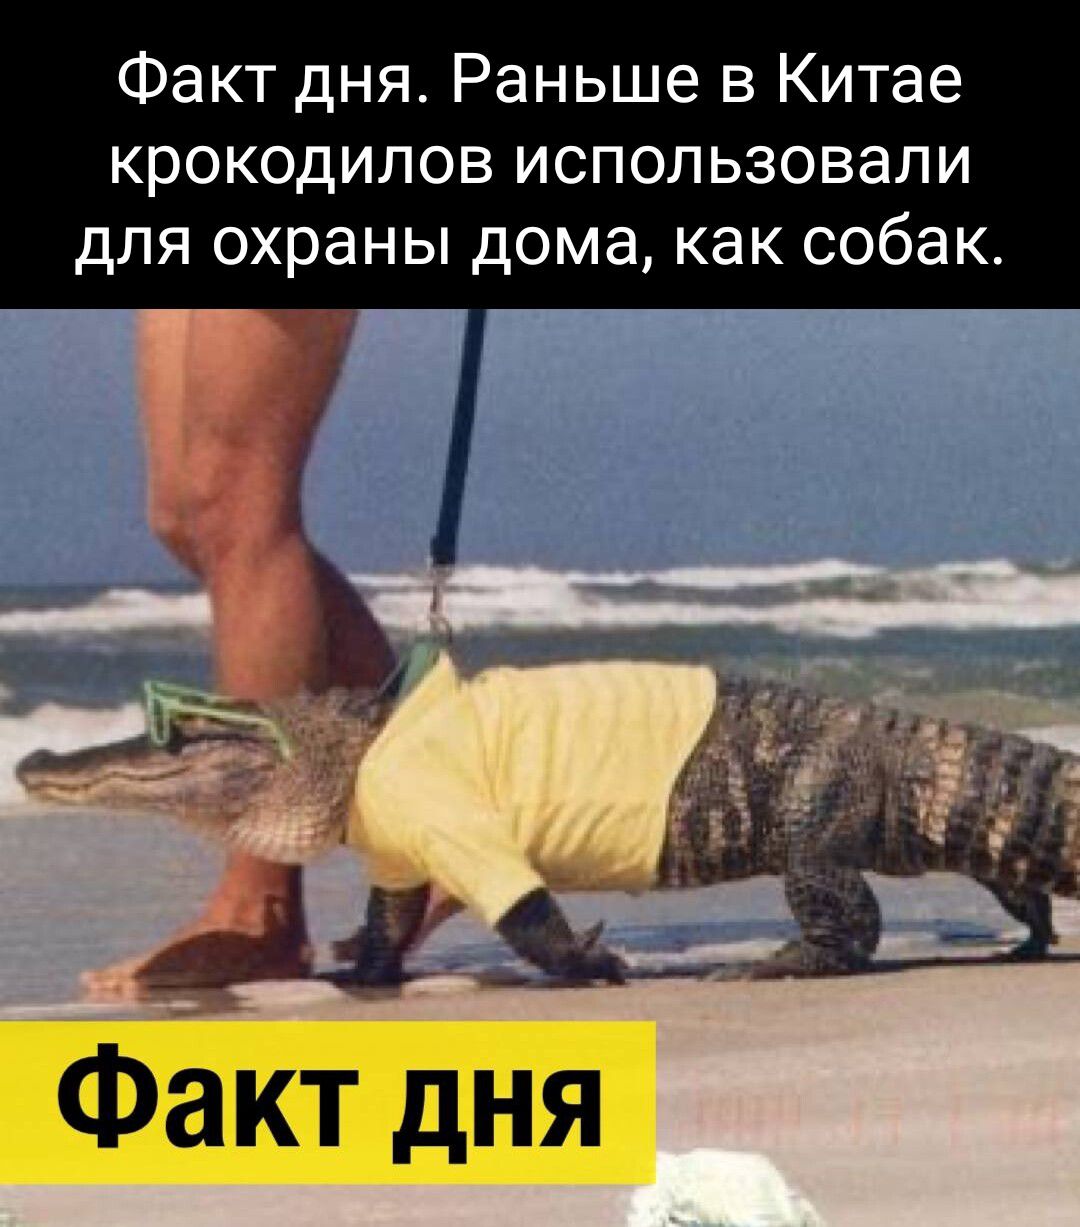 Факт дня_ Раньше в Китае крокодилов использовали для охраны дома как собак д ФёКТ дНЯ